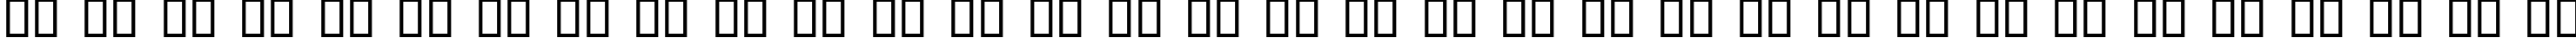 Пример написания русского алфавита шрифтом Roman Antique